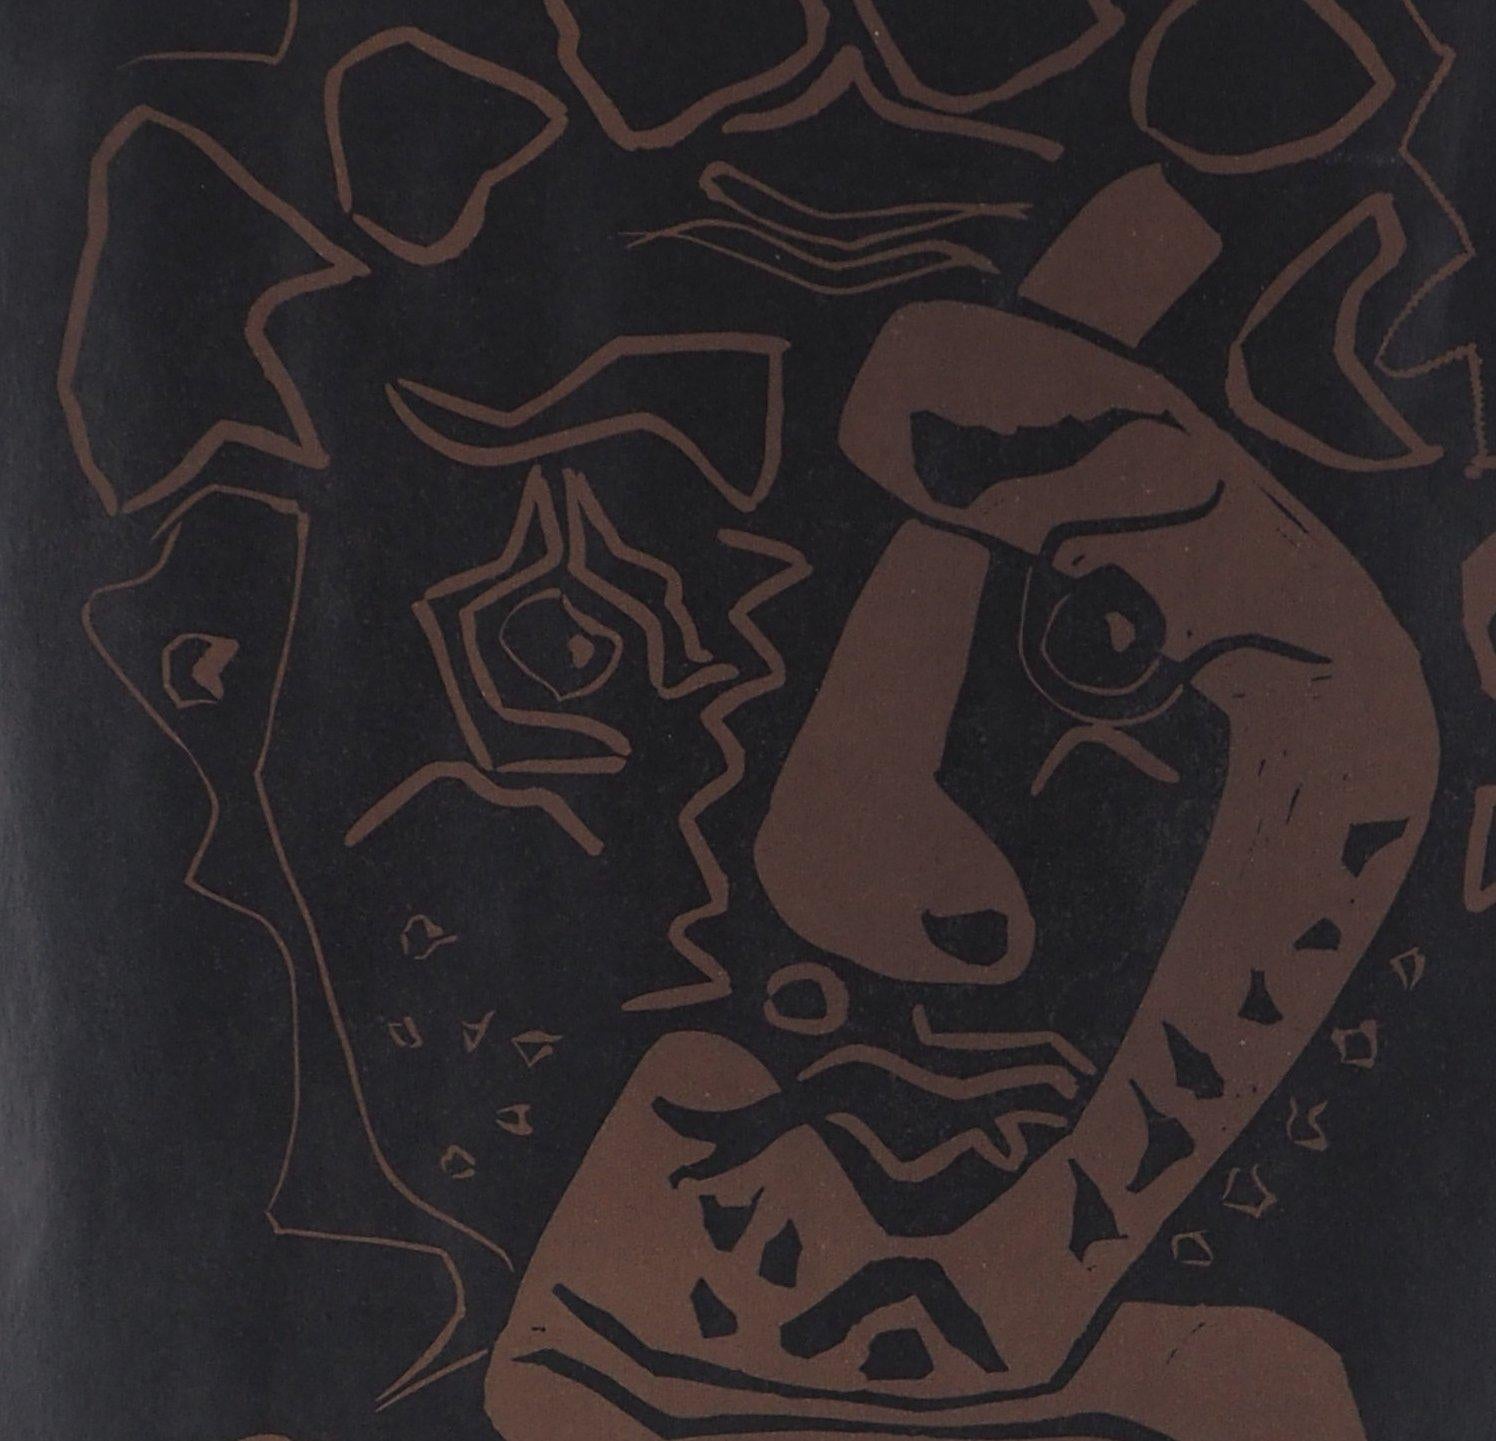 Pablo Picasso (après)
Tête d'histrion, 1965

Linogravure
(Imprimé dans les studios d'Arnera)
Sur papier 90 x 58 cm (c. 36 x 23 in)

RÉFÉRENCES : Catalogue raisonné Czwiklitzer #262

Très bon état, légers défauts de manipulation et petite déchirure